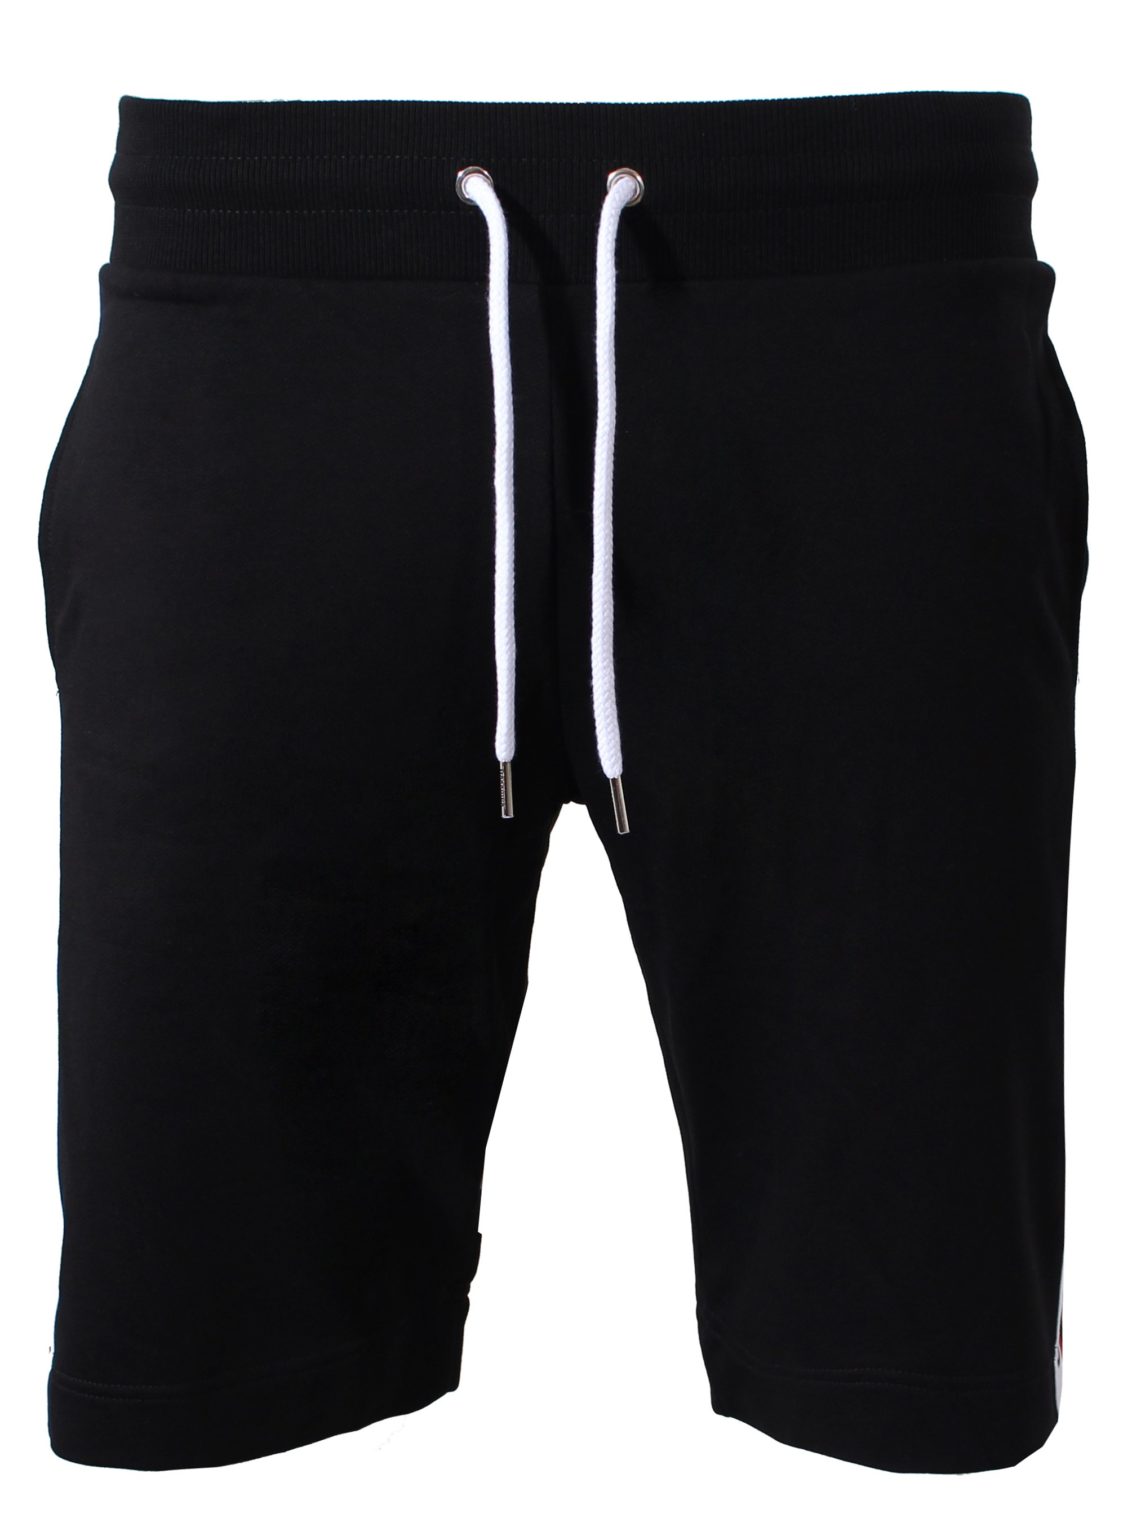 מכנס קצר מוסקינו בצבע שחור דגם MOSCHINO - moschino short - חנות מותגים